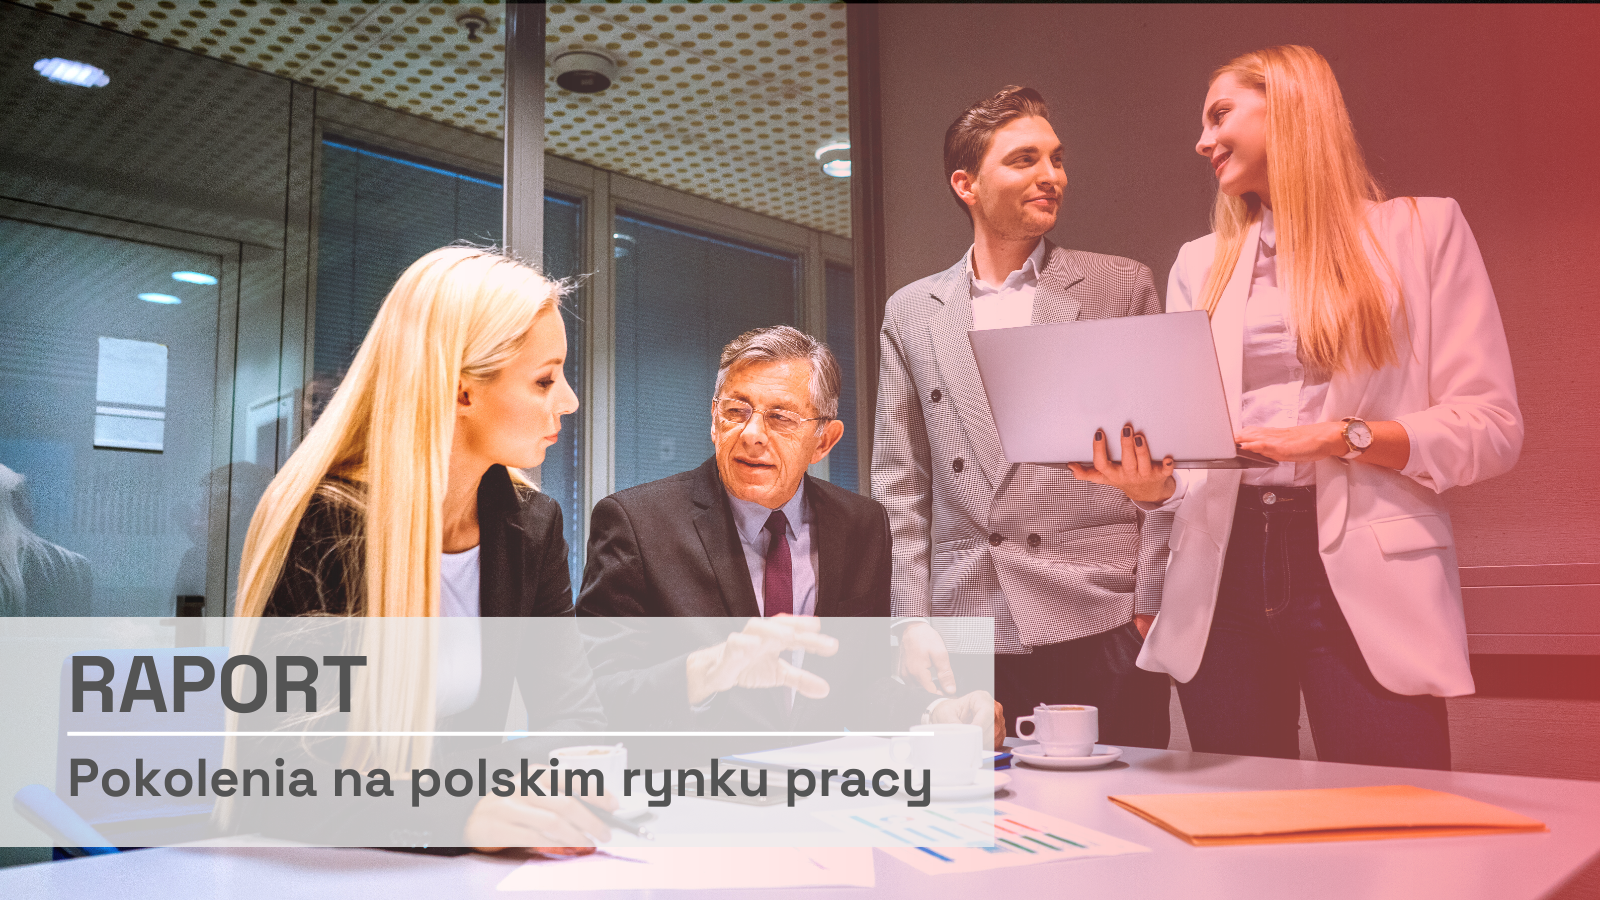 Pokolenia na polskim rynku pracy [RAPORT] rynek pracy mediarun raport pokolenia